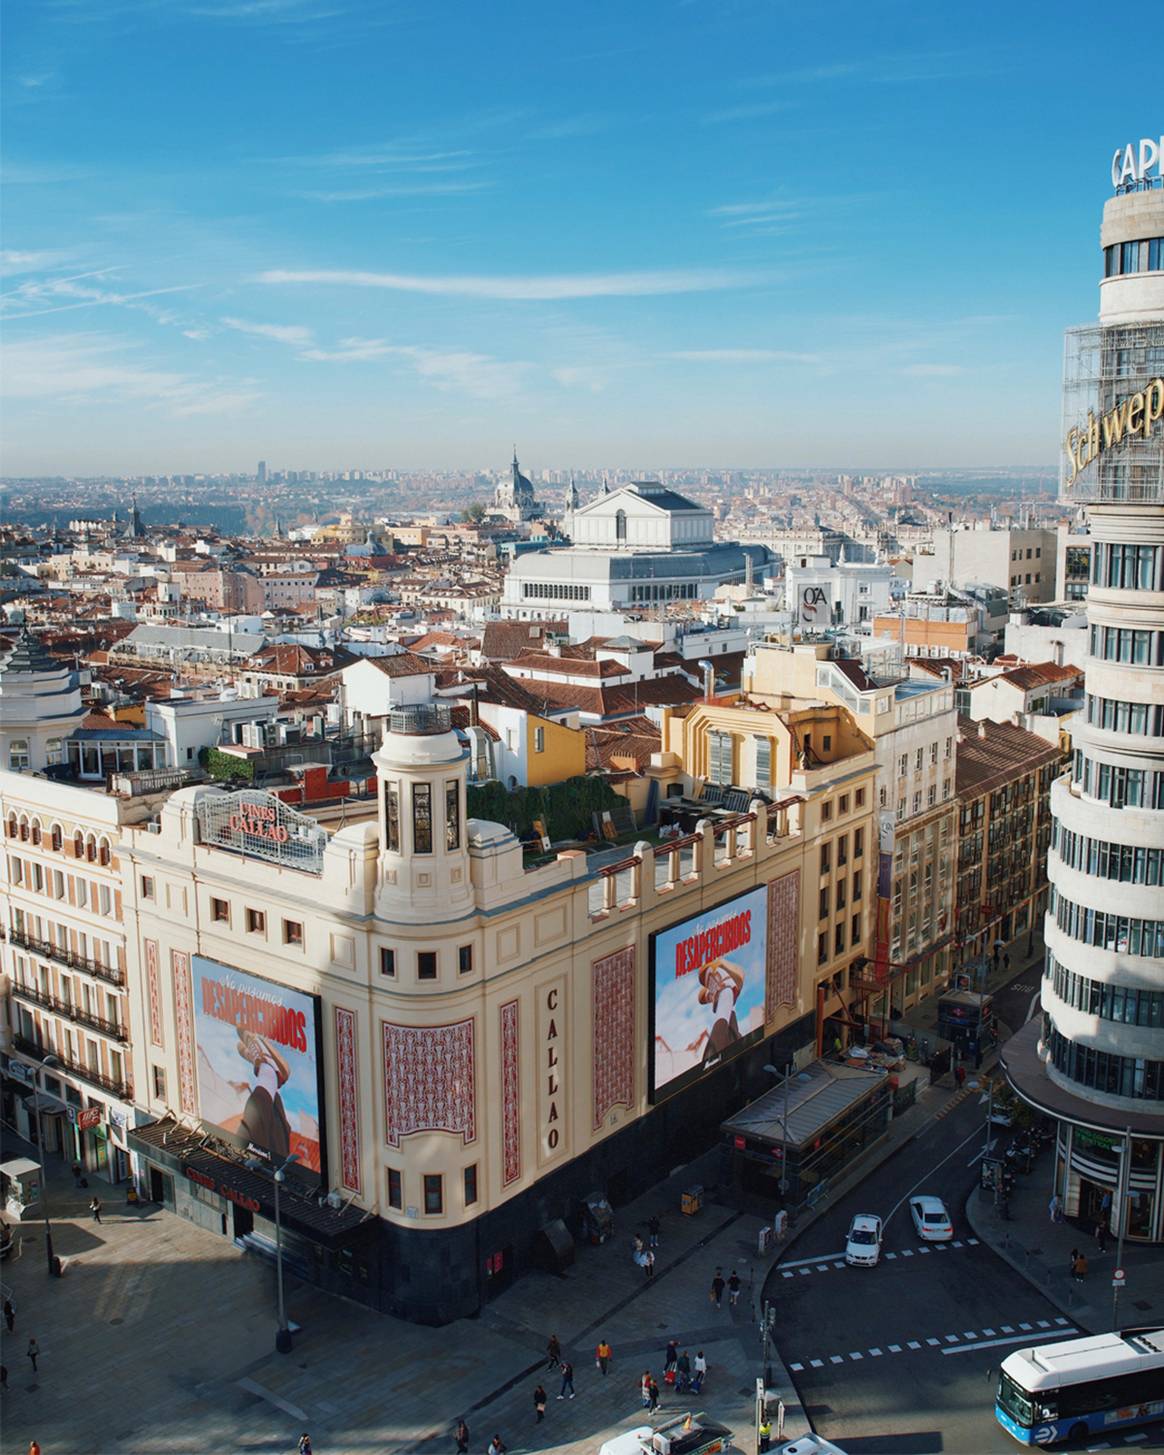 Imagen de la campaña de Morrison puesta en marcha desde las pantallas de la Plaza del Callao de Madrid con motivo del “Black Friday”.